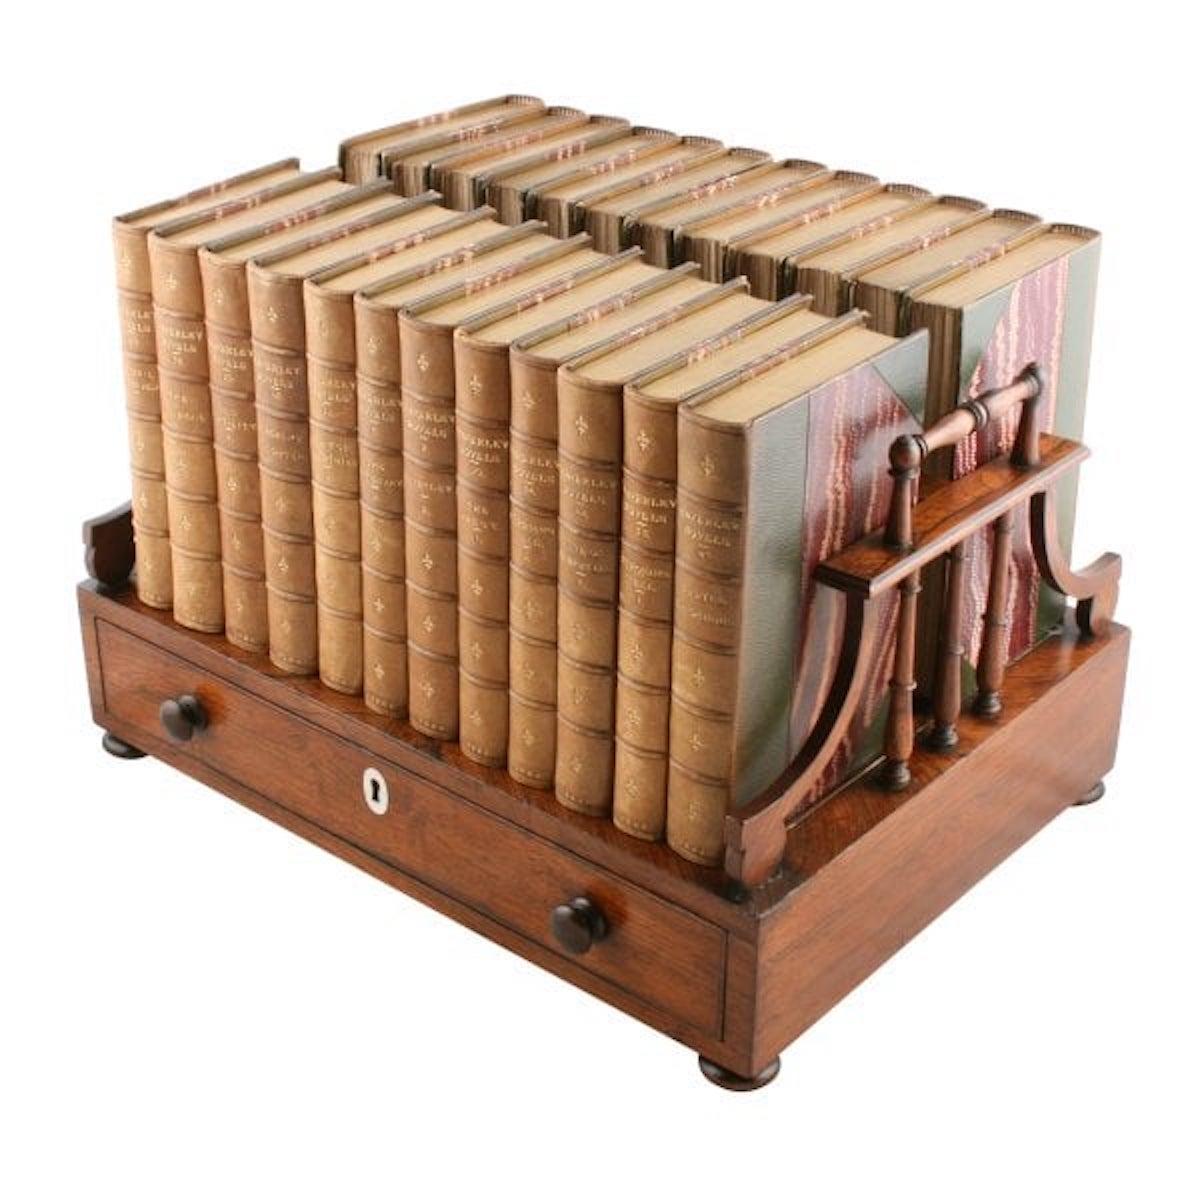 Regency-Buchständer aus Palisanderholz

Ein doppelseitiger Bücherständer aus Palisanderholz aus dem frühen 19. Jahrhundert.

Die Oberseite besteht aus Palisanderholz mit Querstreifen und dekorativen Einlegearbeiten aus Perlmutt und